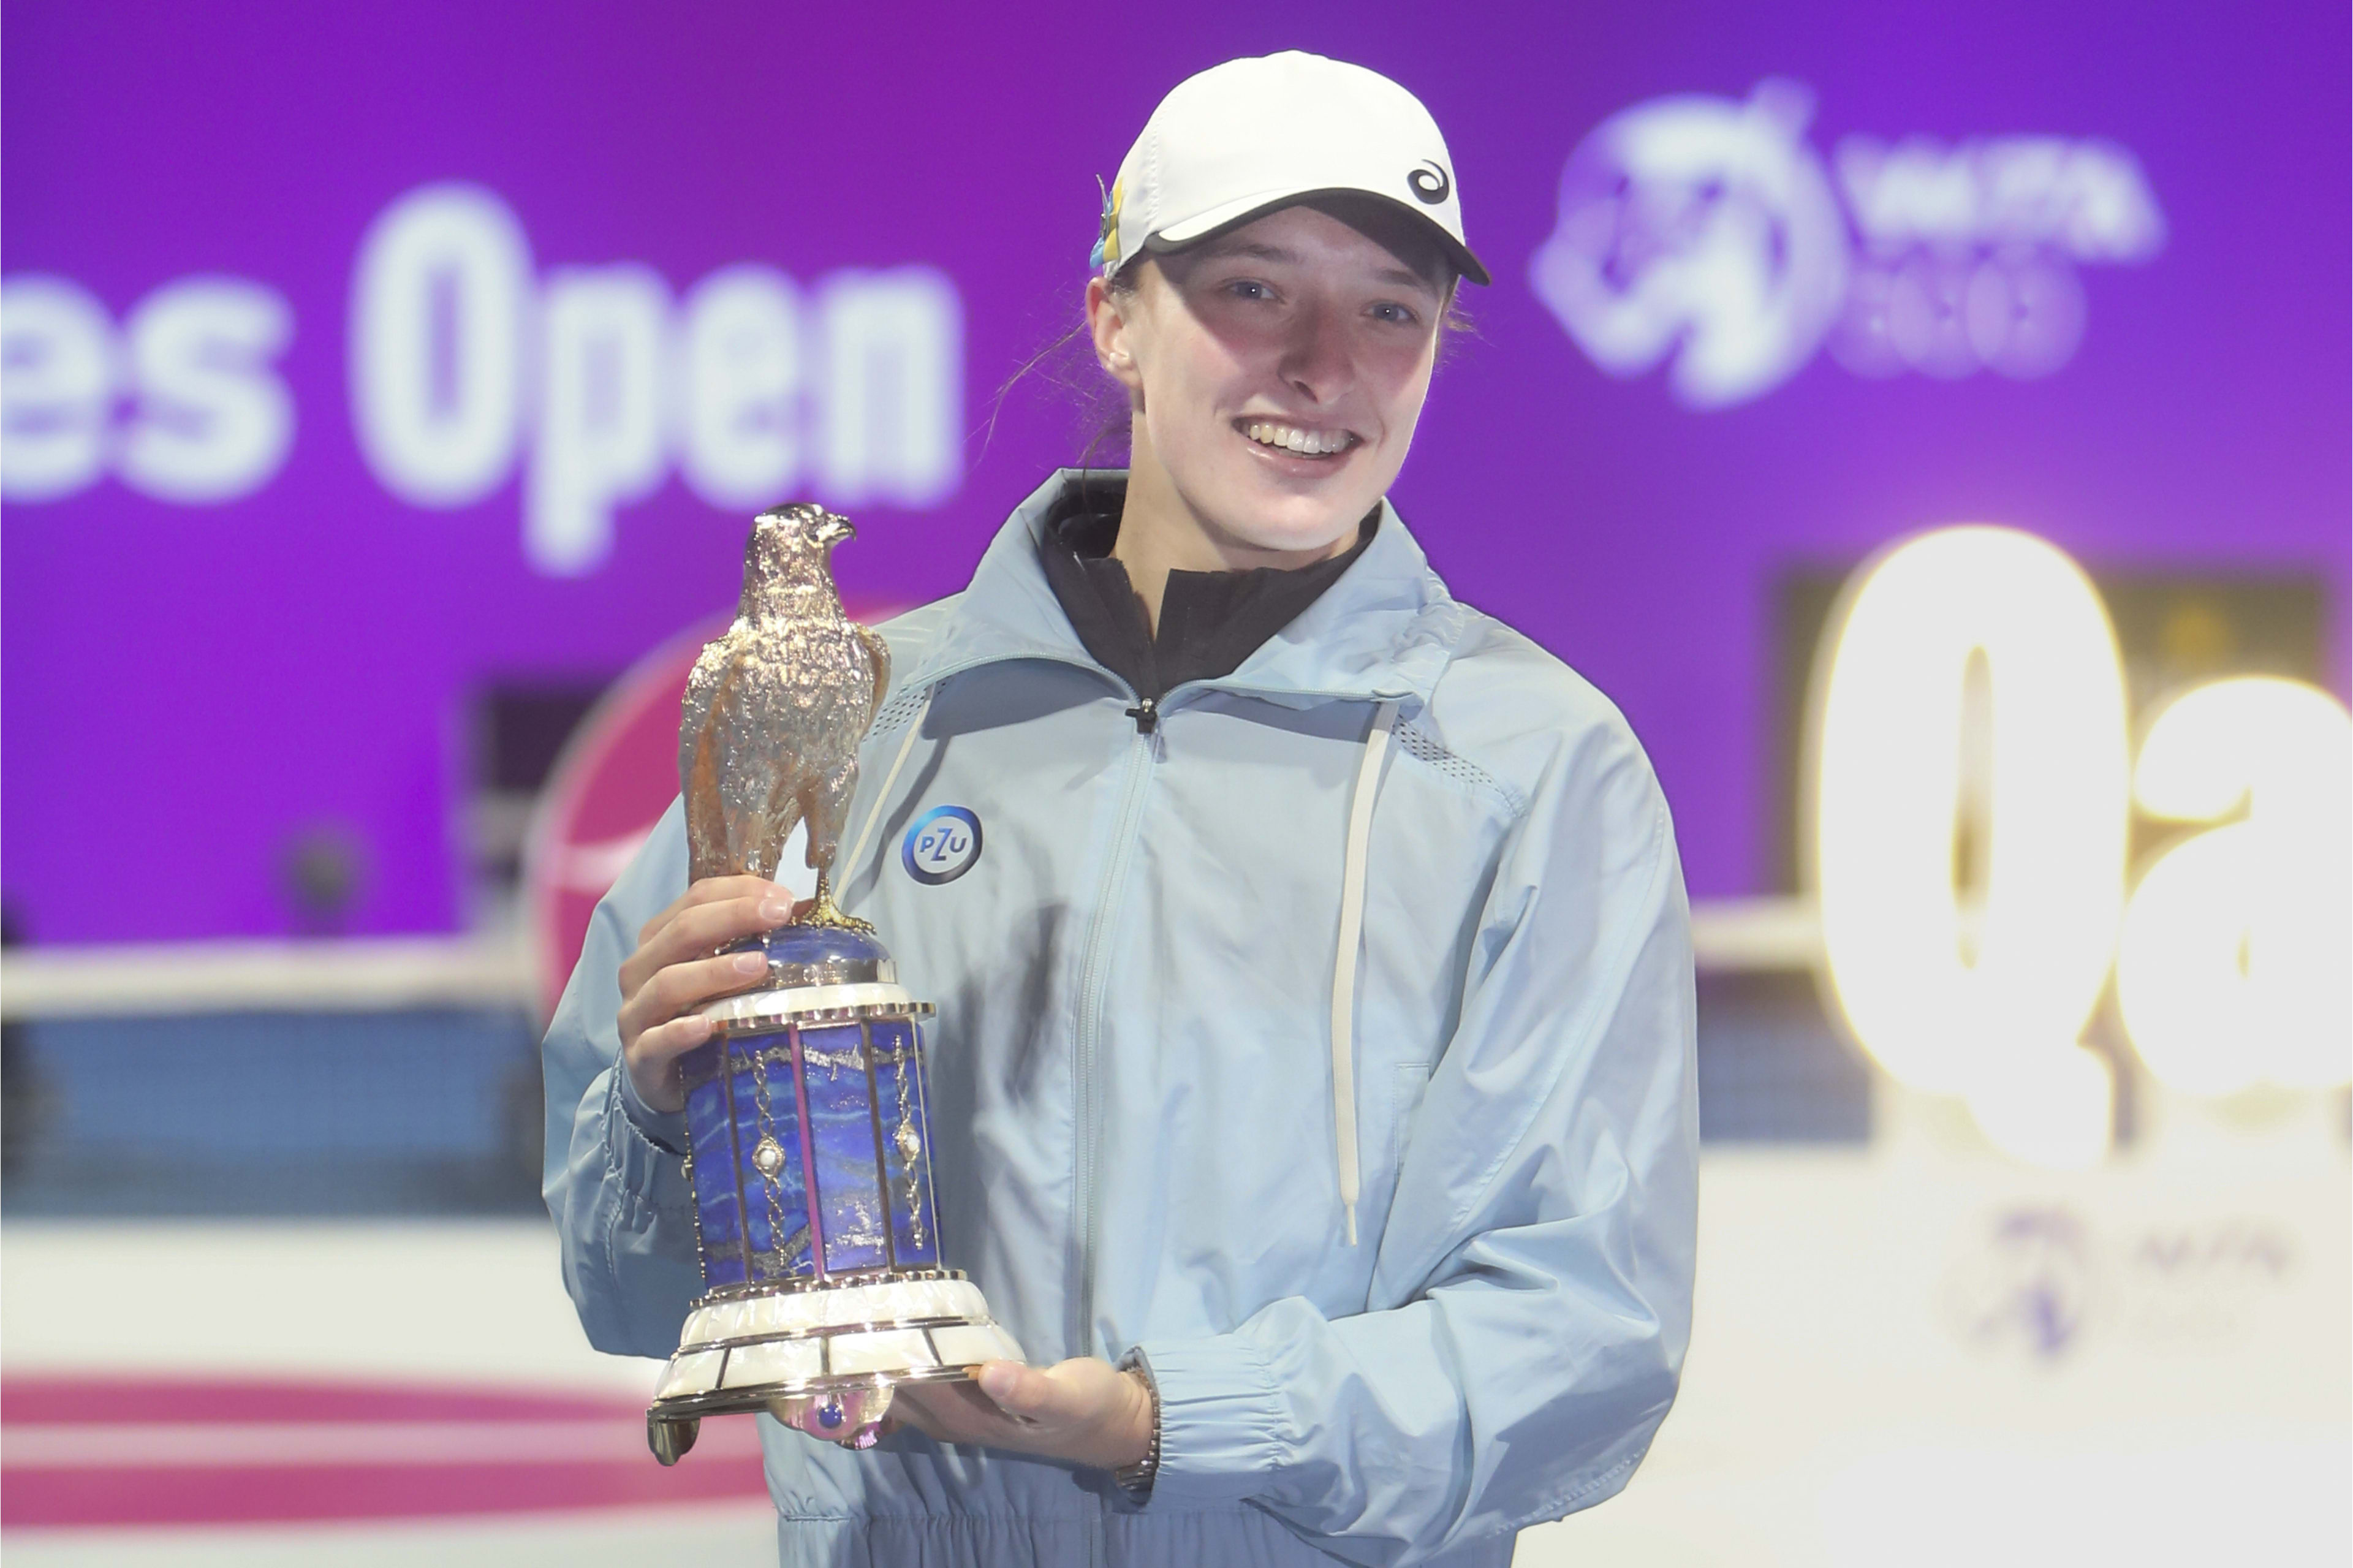 Swiatek sweeps aside Pegula to retain Qatar Open title